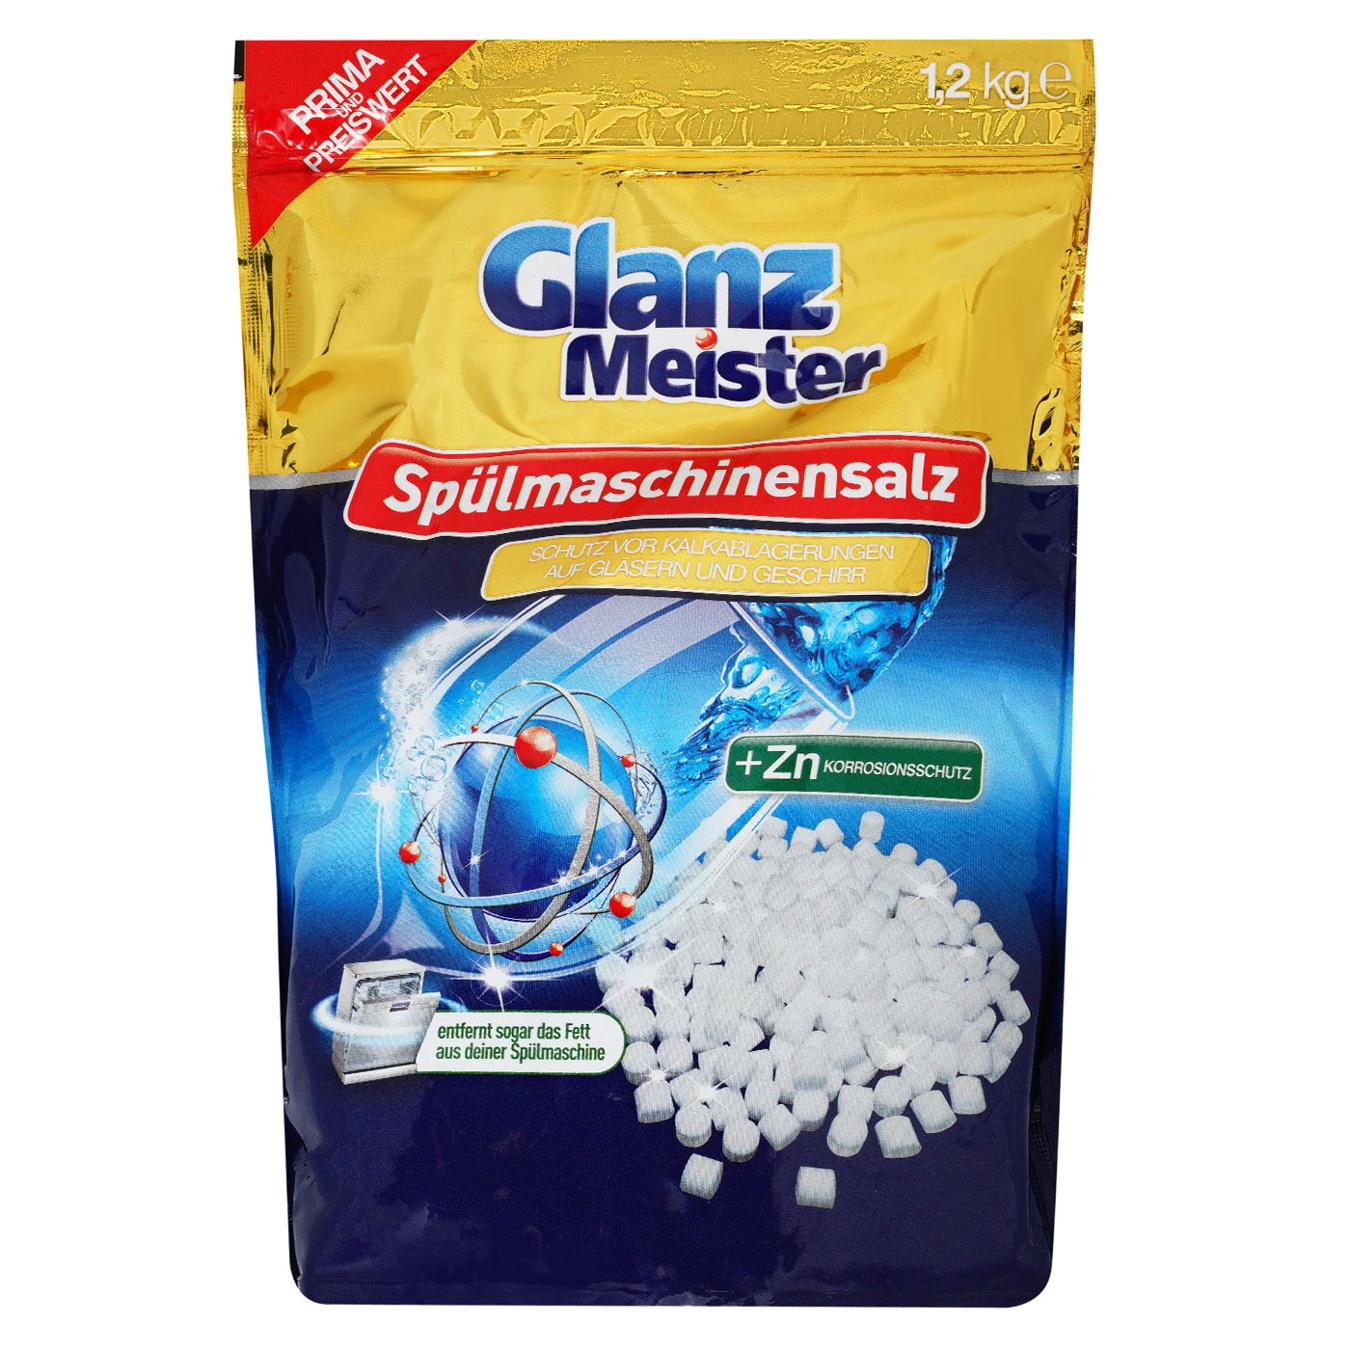 Glanz Meister salt for dishwashers 1.2 kg